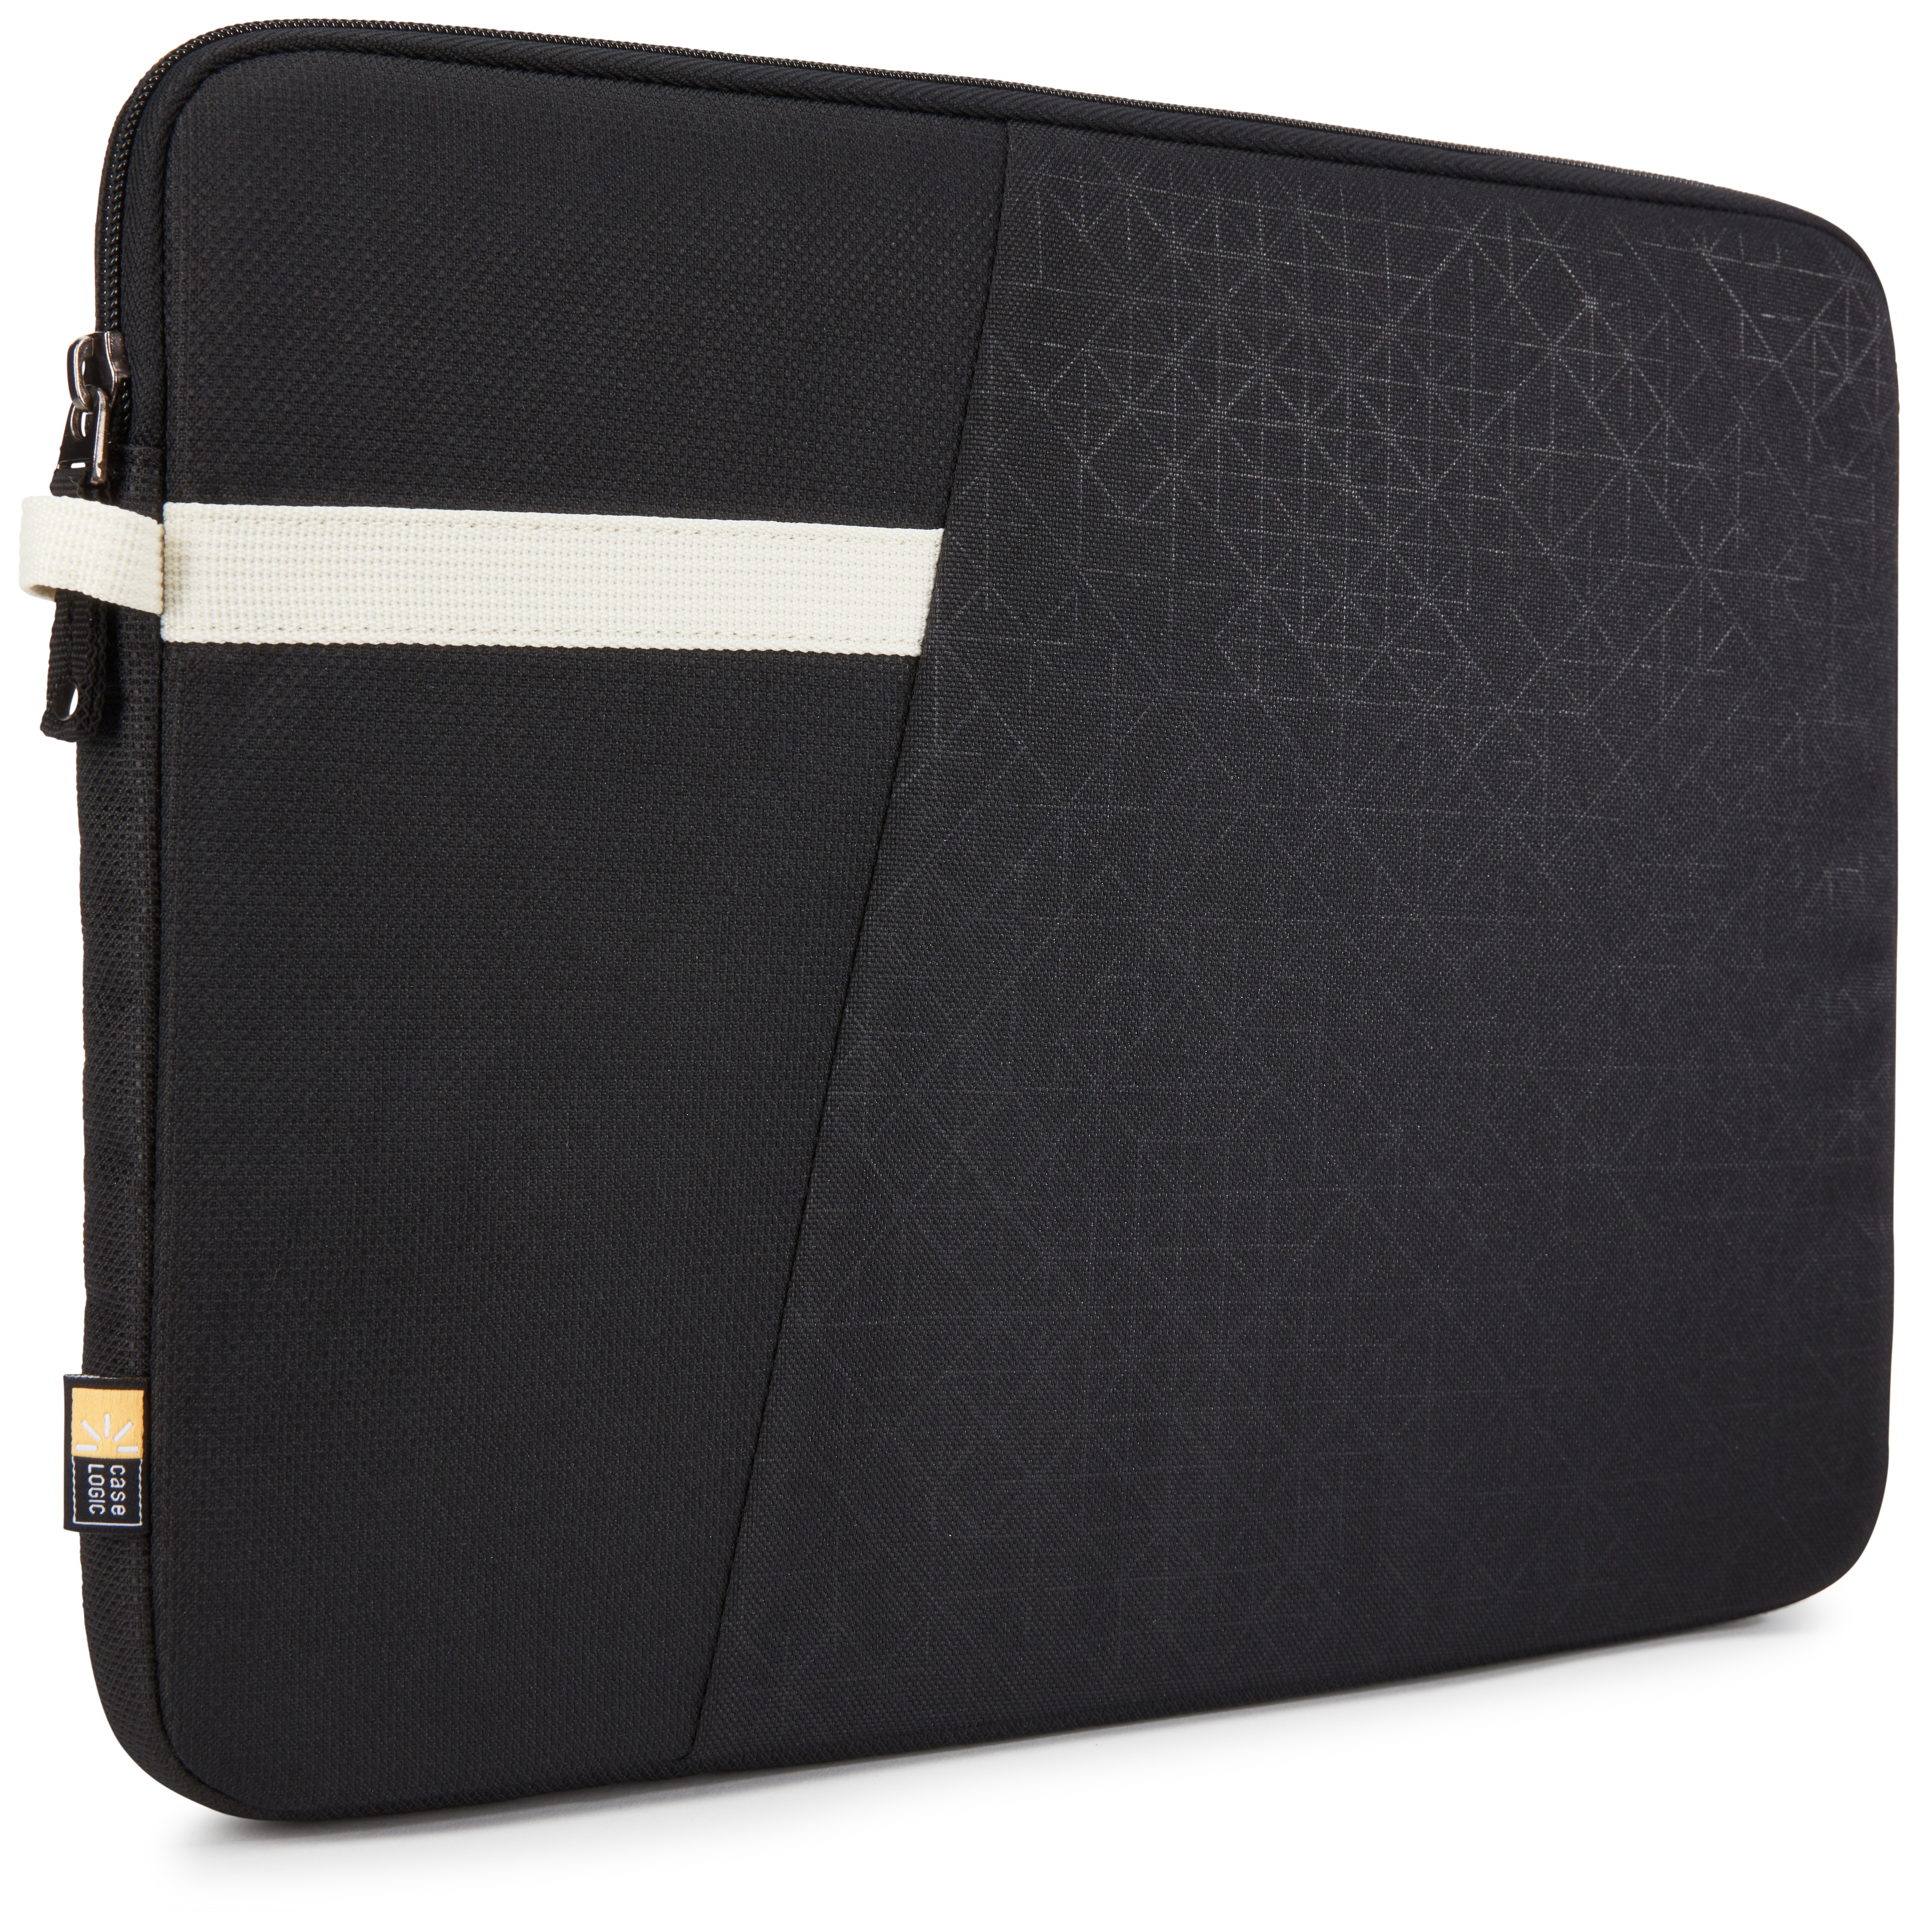 CASE LOGIC Ibira Notebooksleeve Sleeve für Polyester, Universal Schwarz